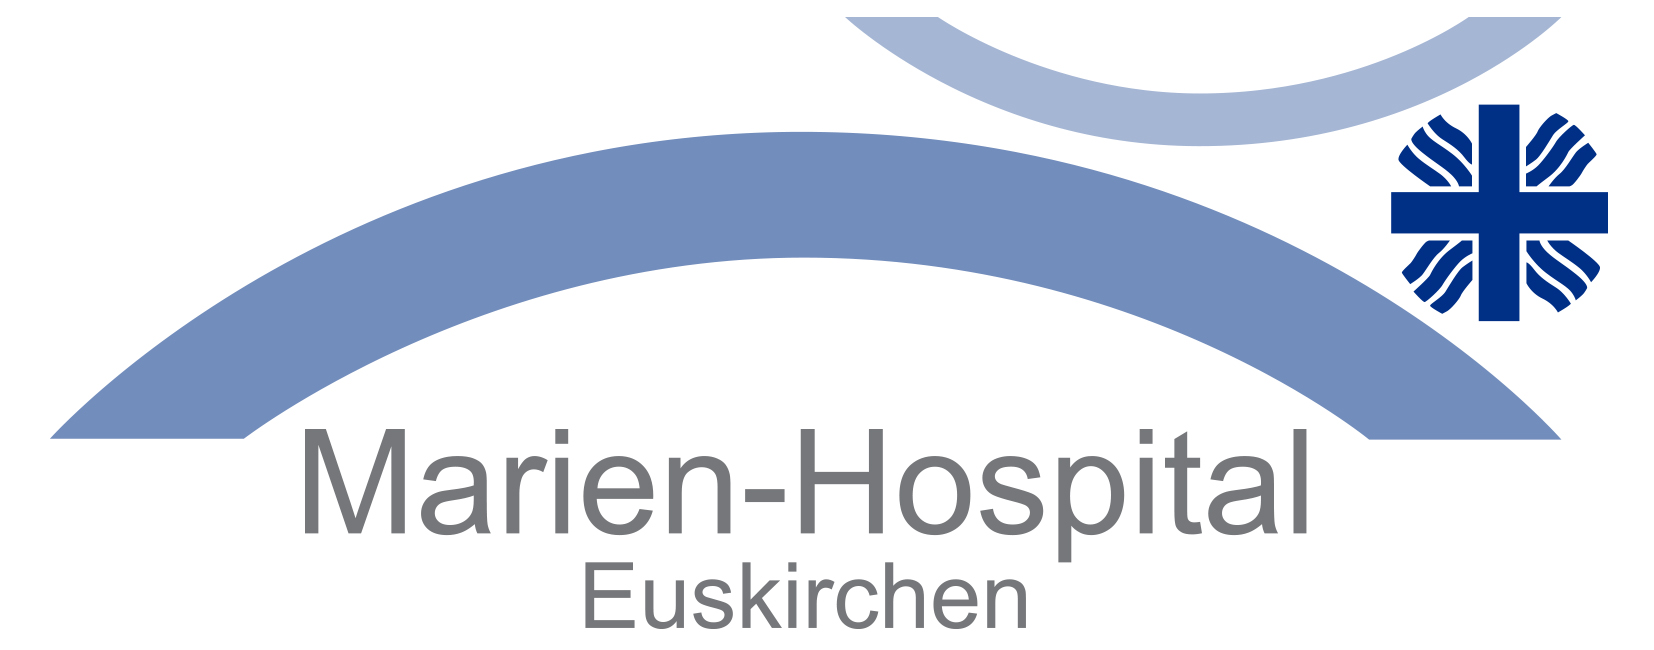 CIRS–Marien-Hospital Euskirchen GmbH